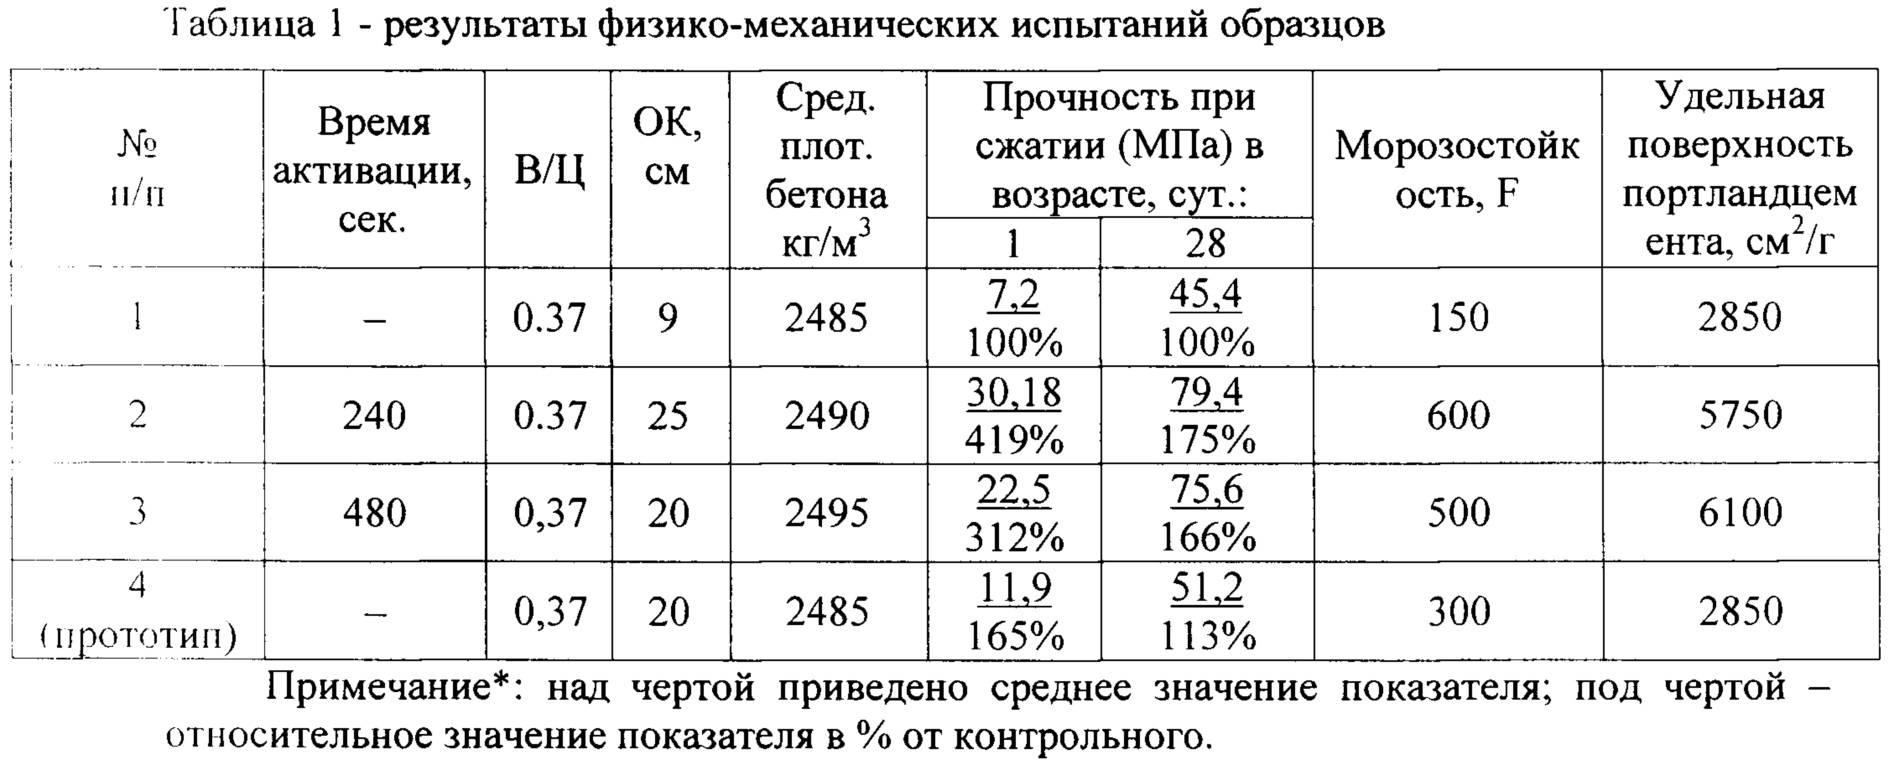 Показатели плотности и удельного веса 1 м3 железобетона